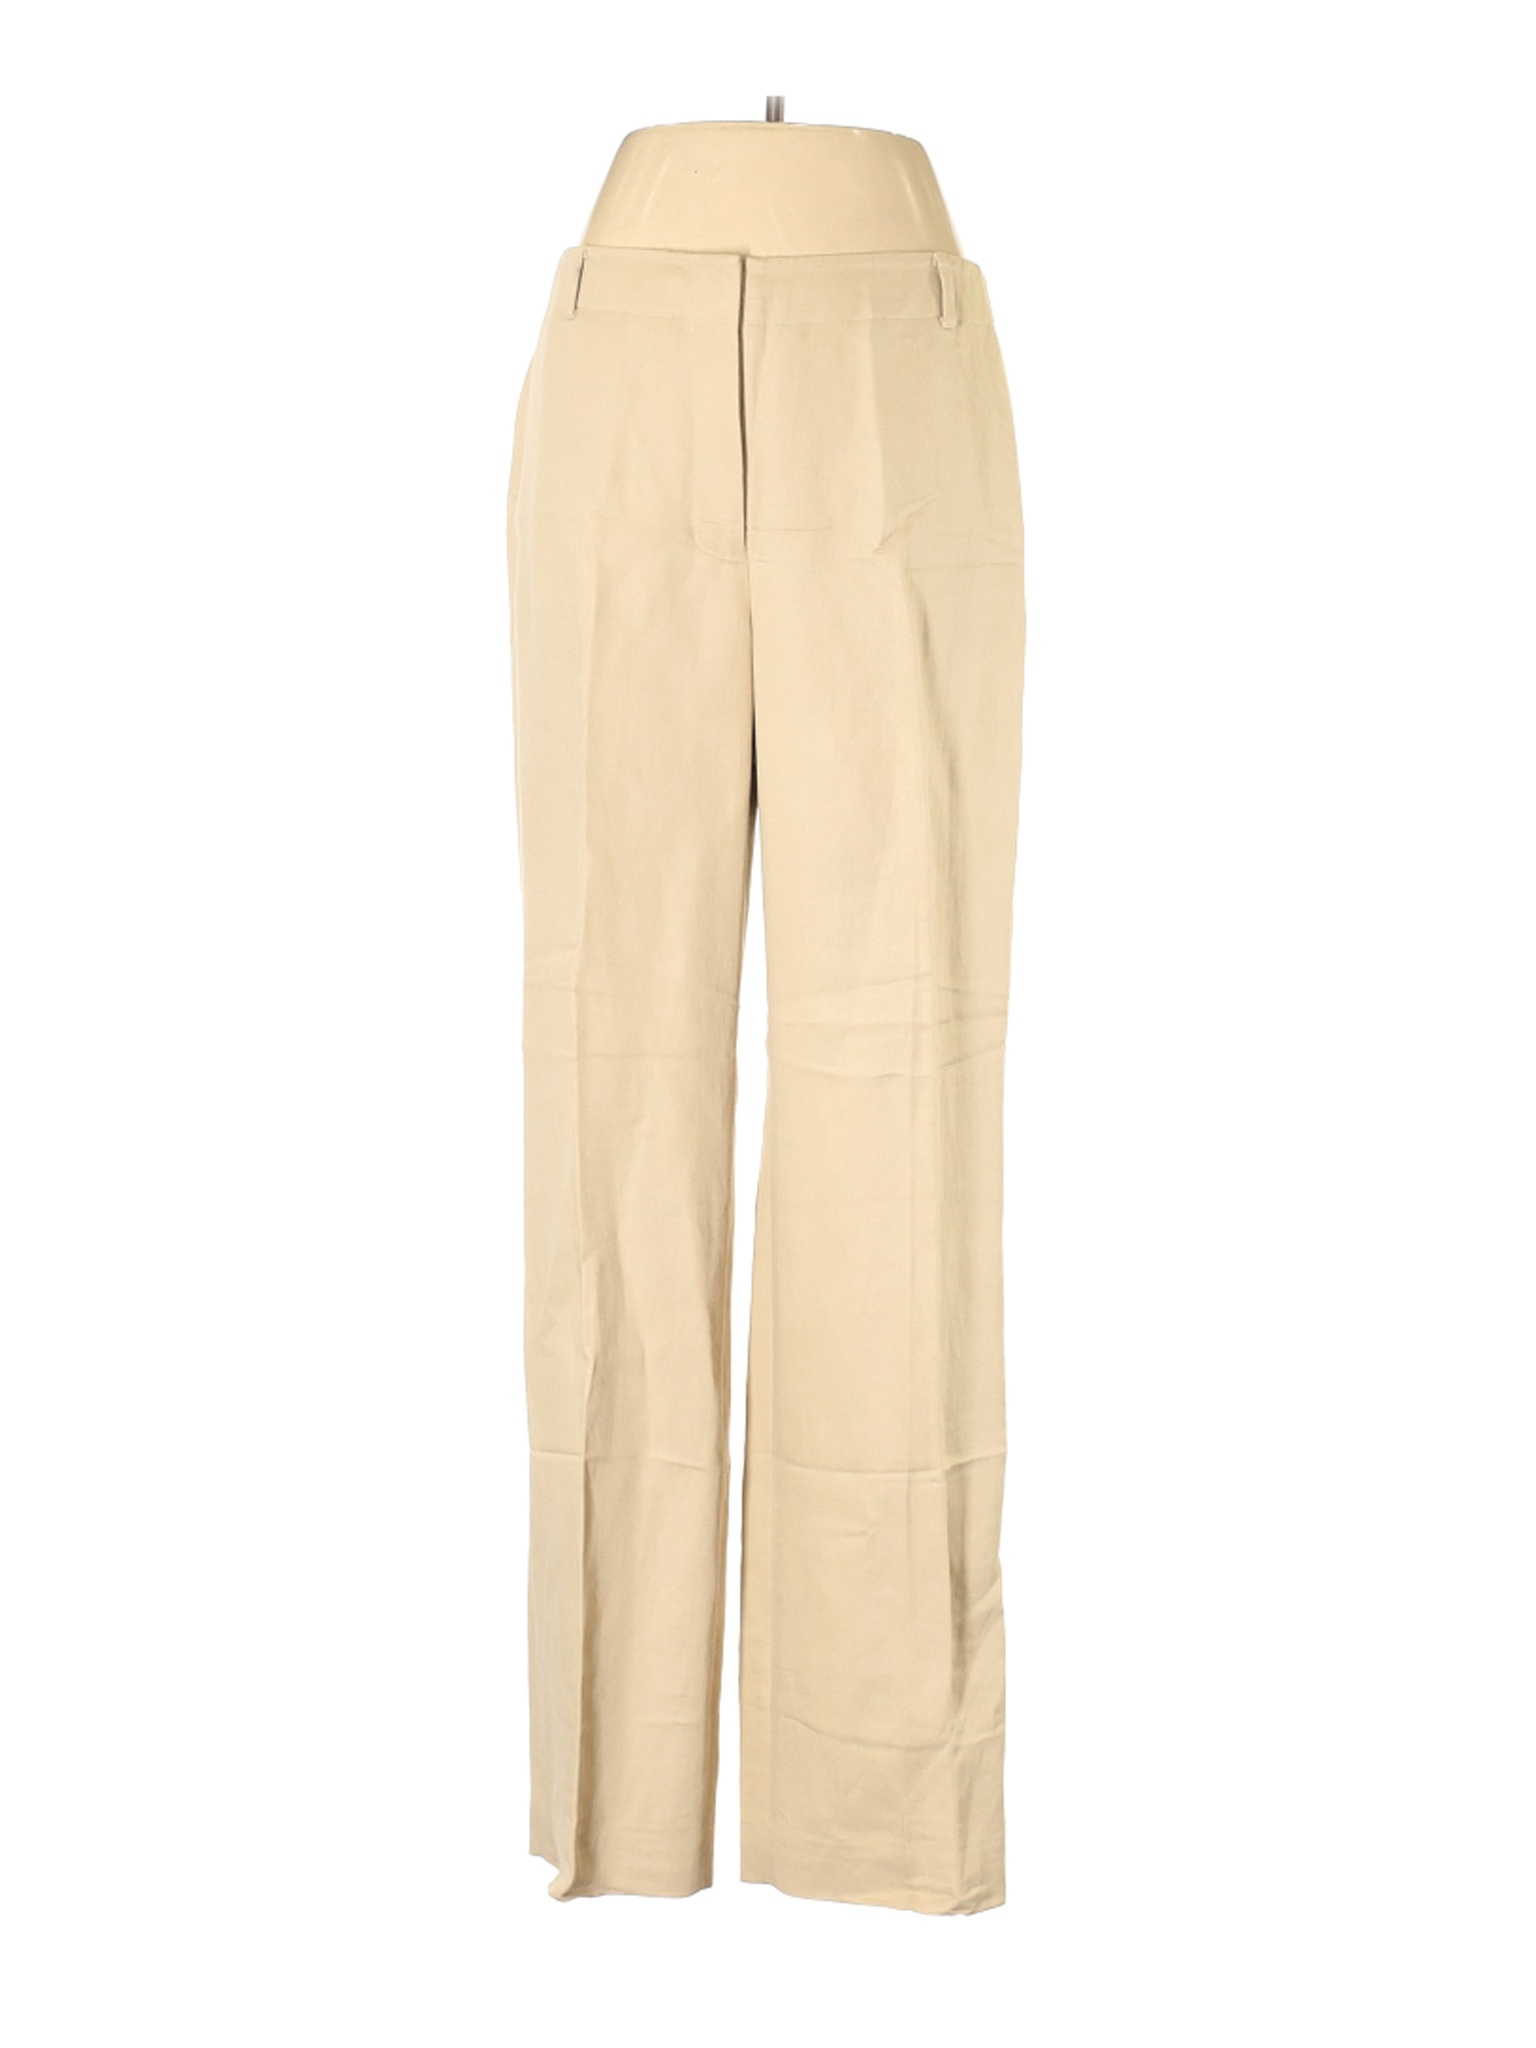 Ann Taylor LOFT Women Brown Linen Pants 8 | eBay